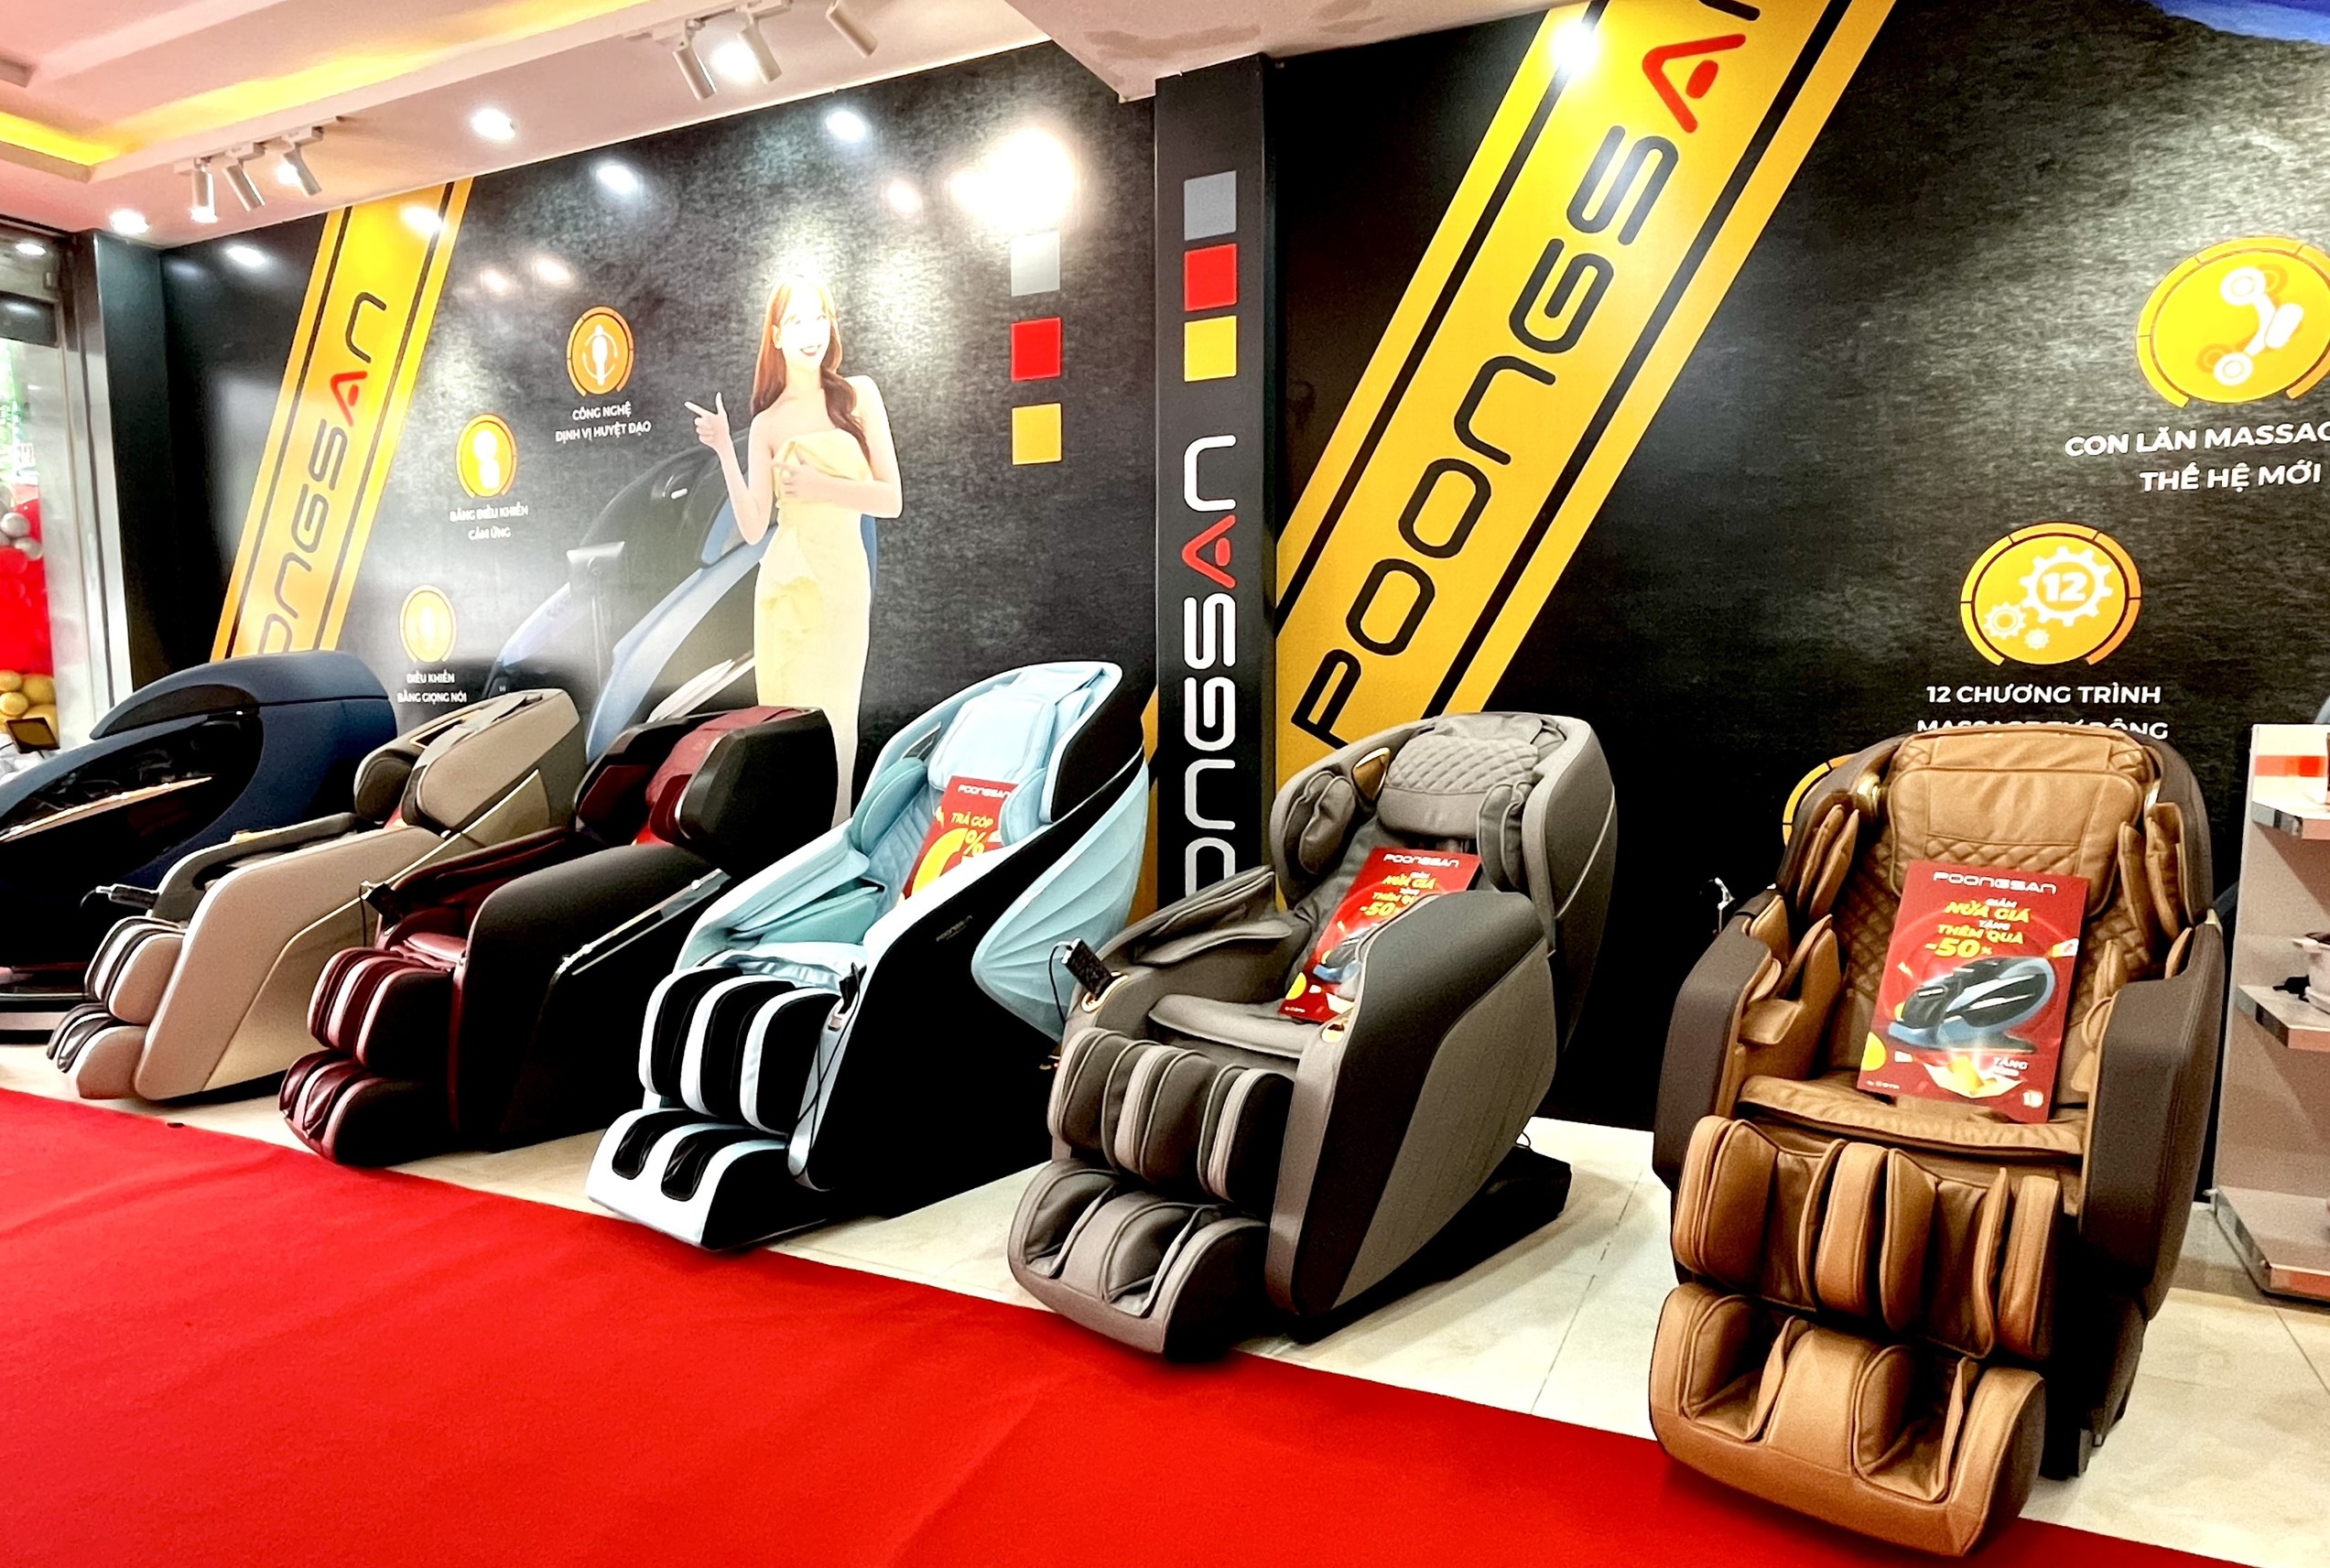 Thương hiệu Poongsan hơn 20 năm cung cấp ghế massage ở thị trường Việt Nam